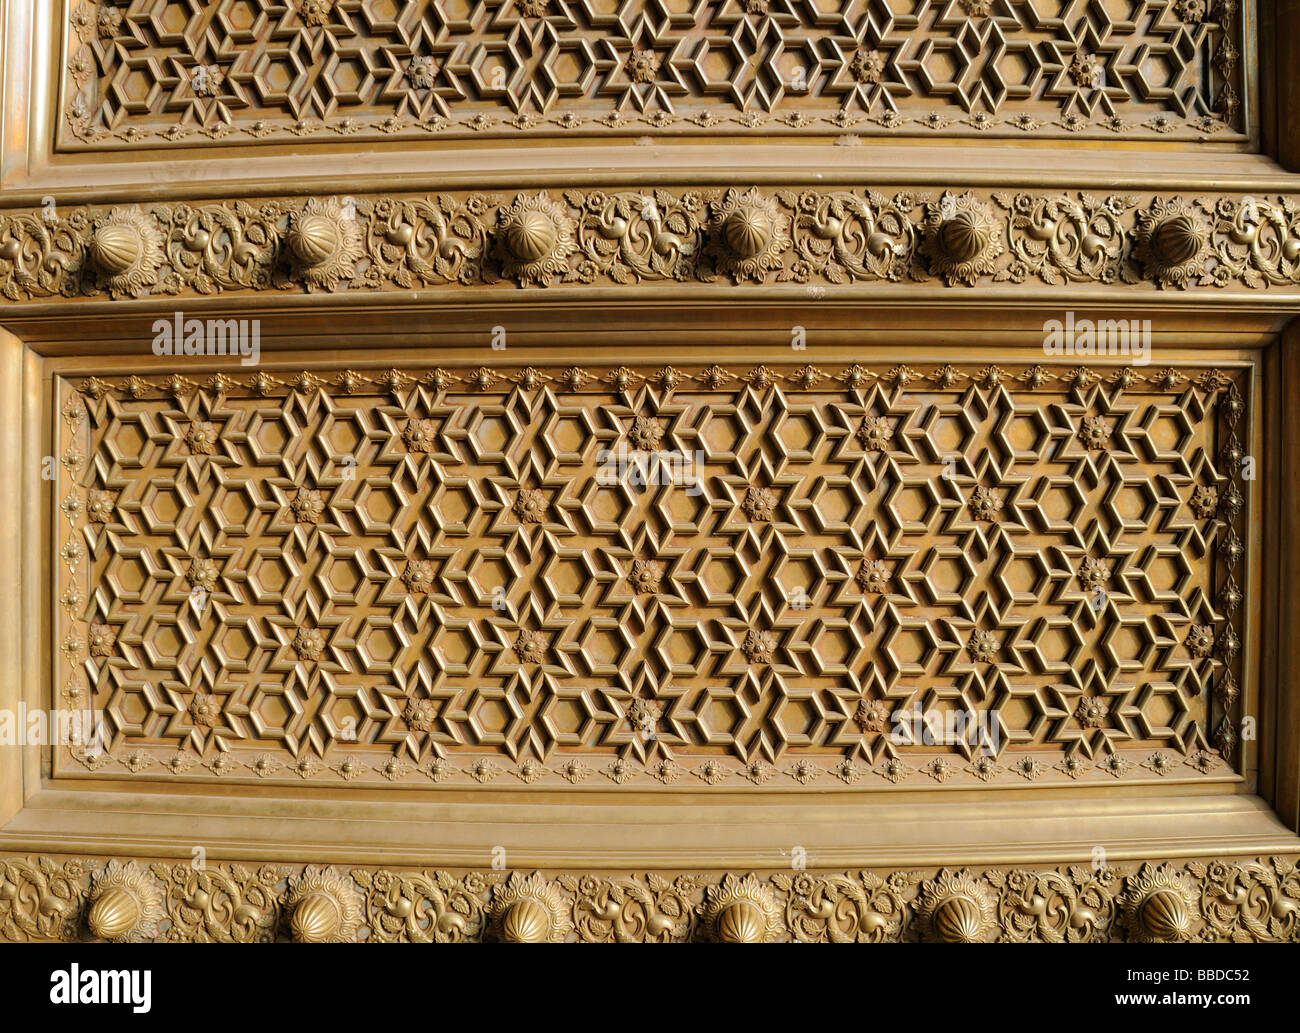 Metalltür mit ein sich wiederholendes Muster von Sternen, Sechsecke und kreuzt. City Place, Jaipur Rajasthan, Republik Indien. Stockfoto